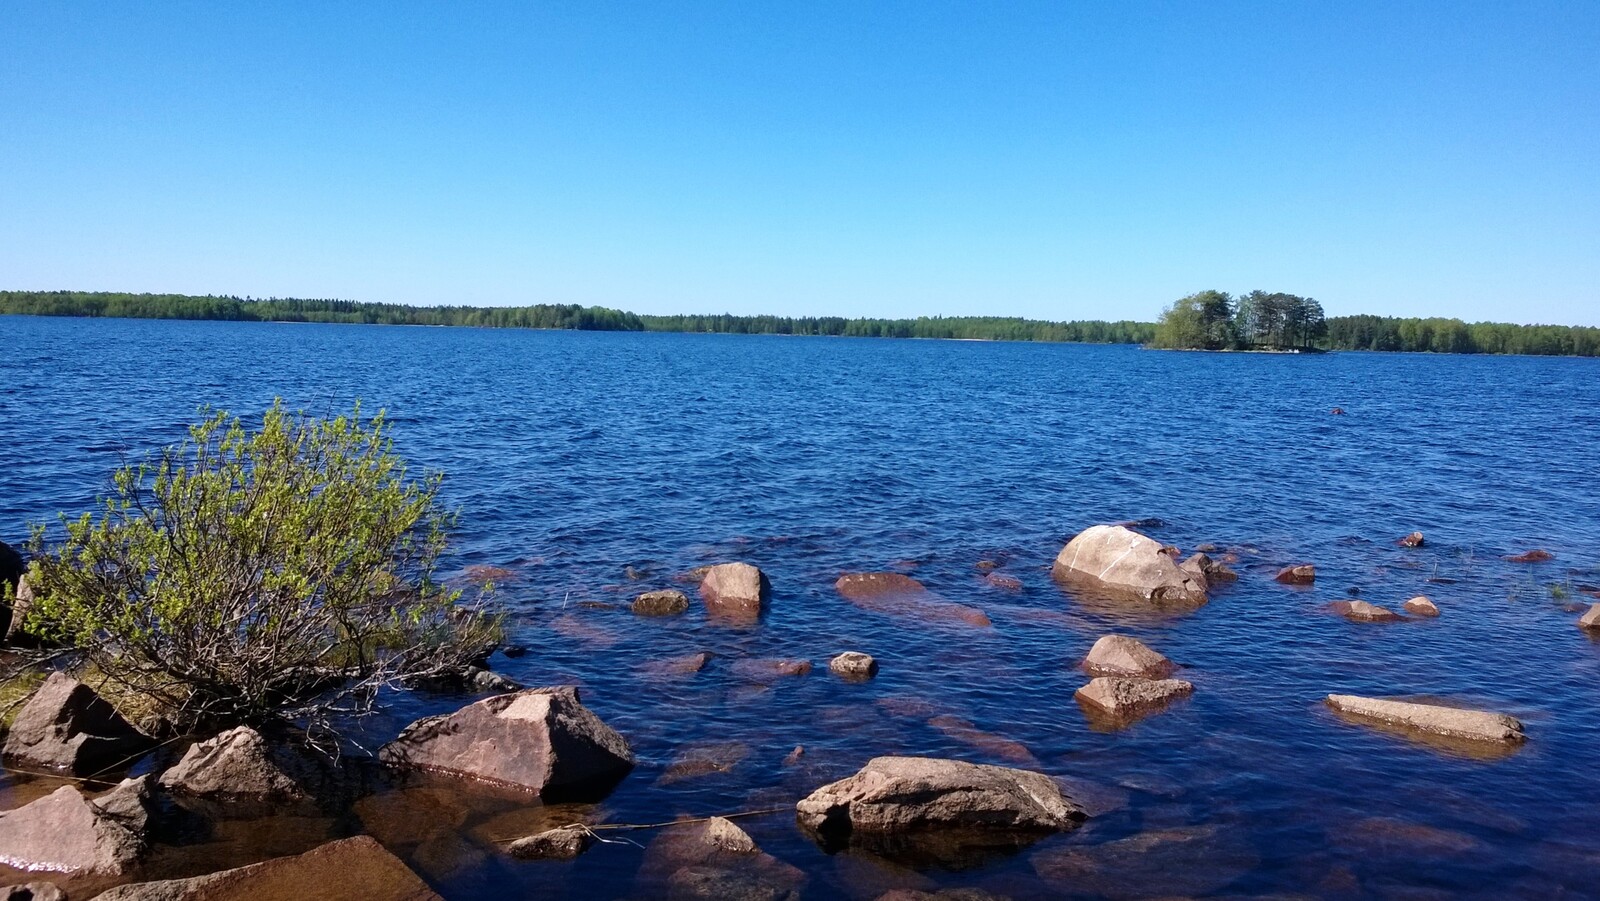 Kesäisessä järvimaisemassa veden pinta laineilee hieman ja rantavedestä pilkistää kiviä.